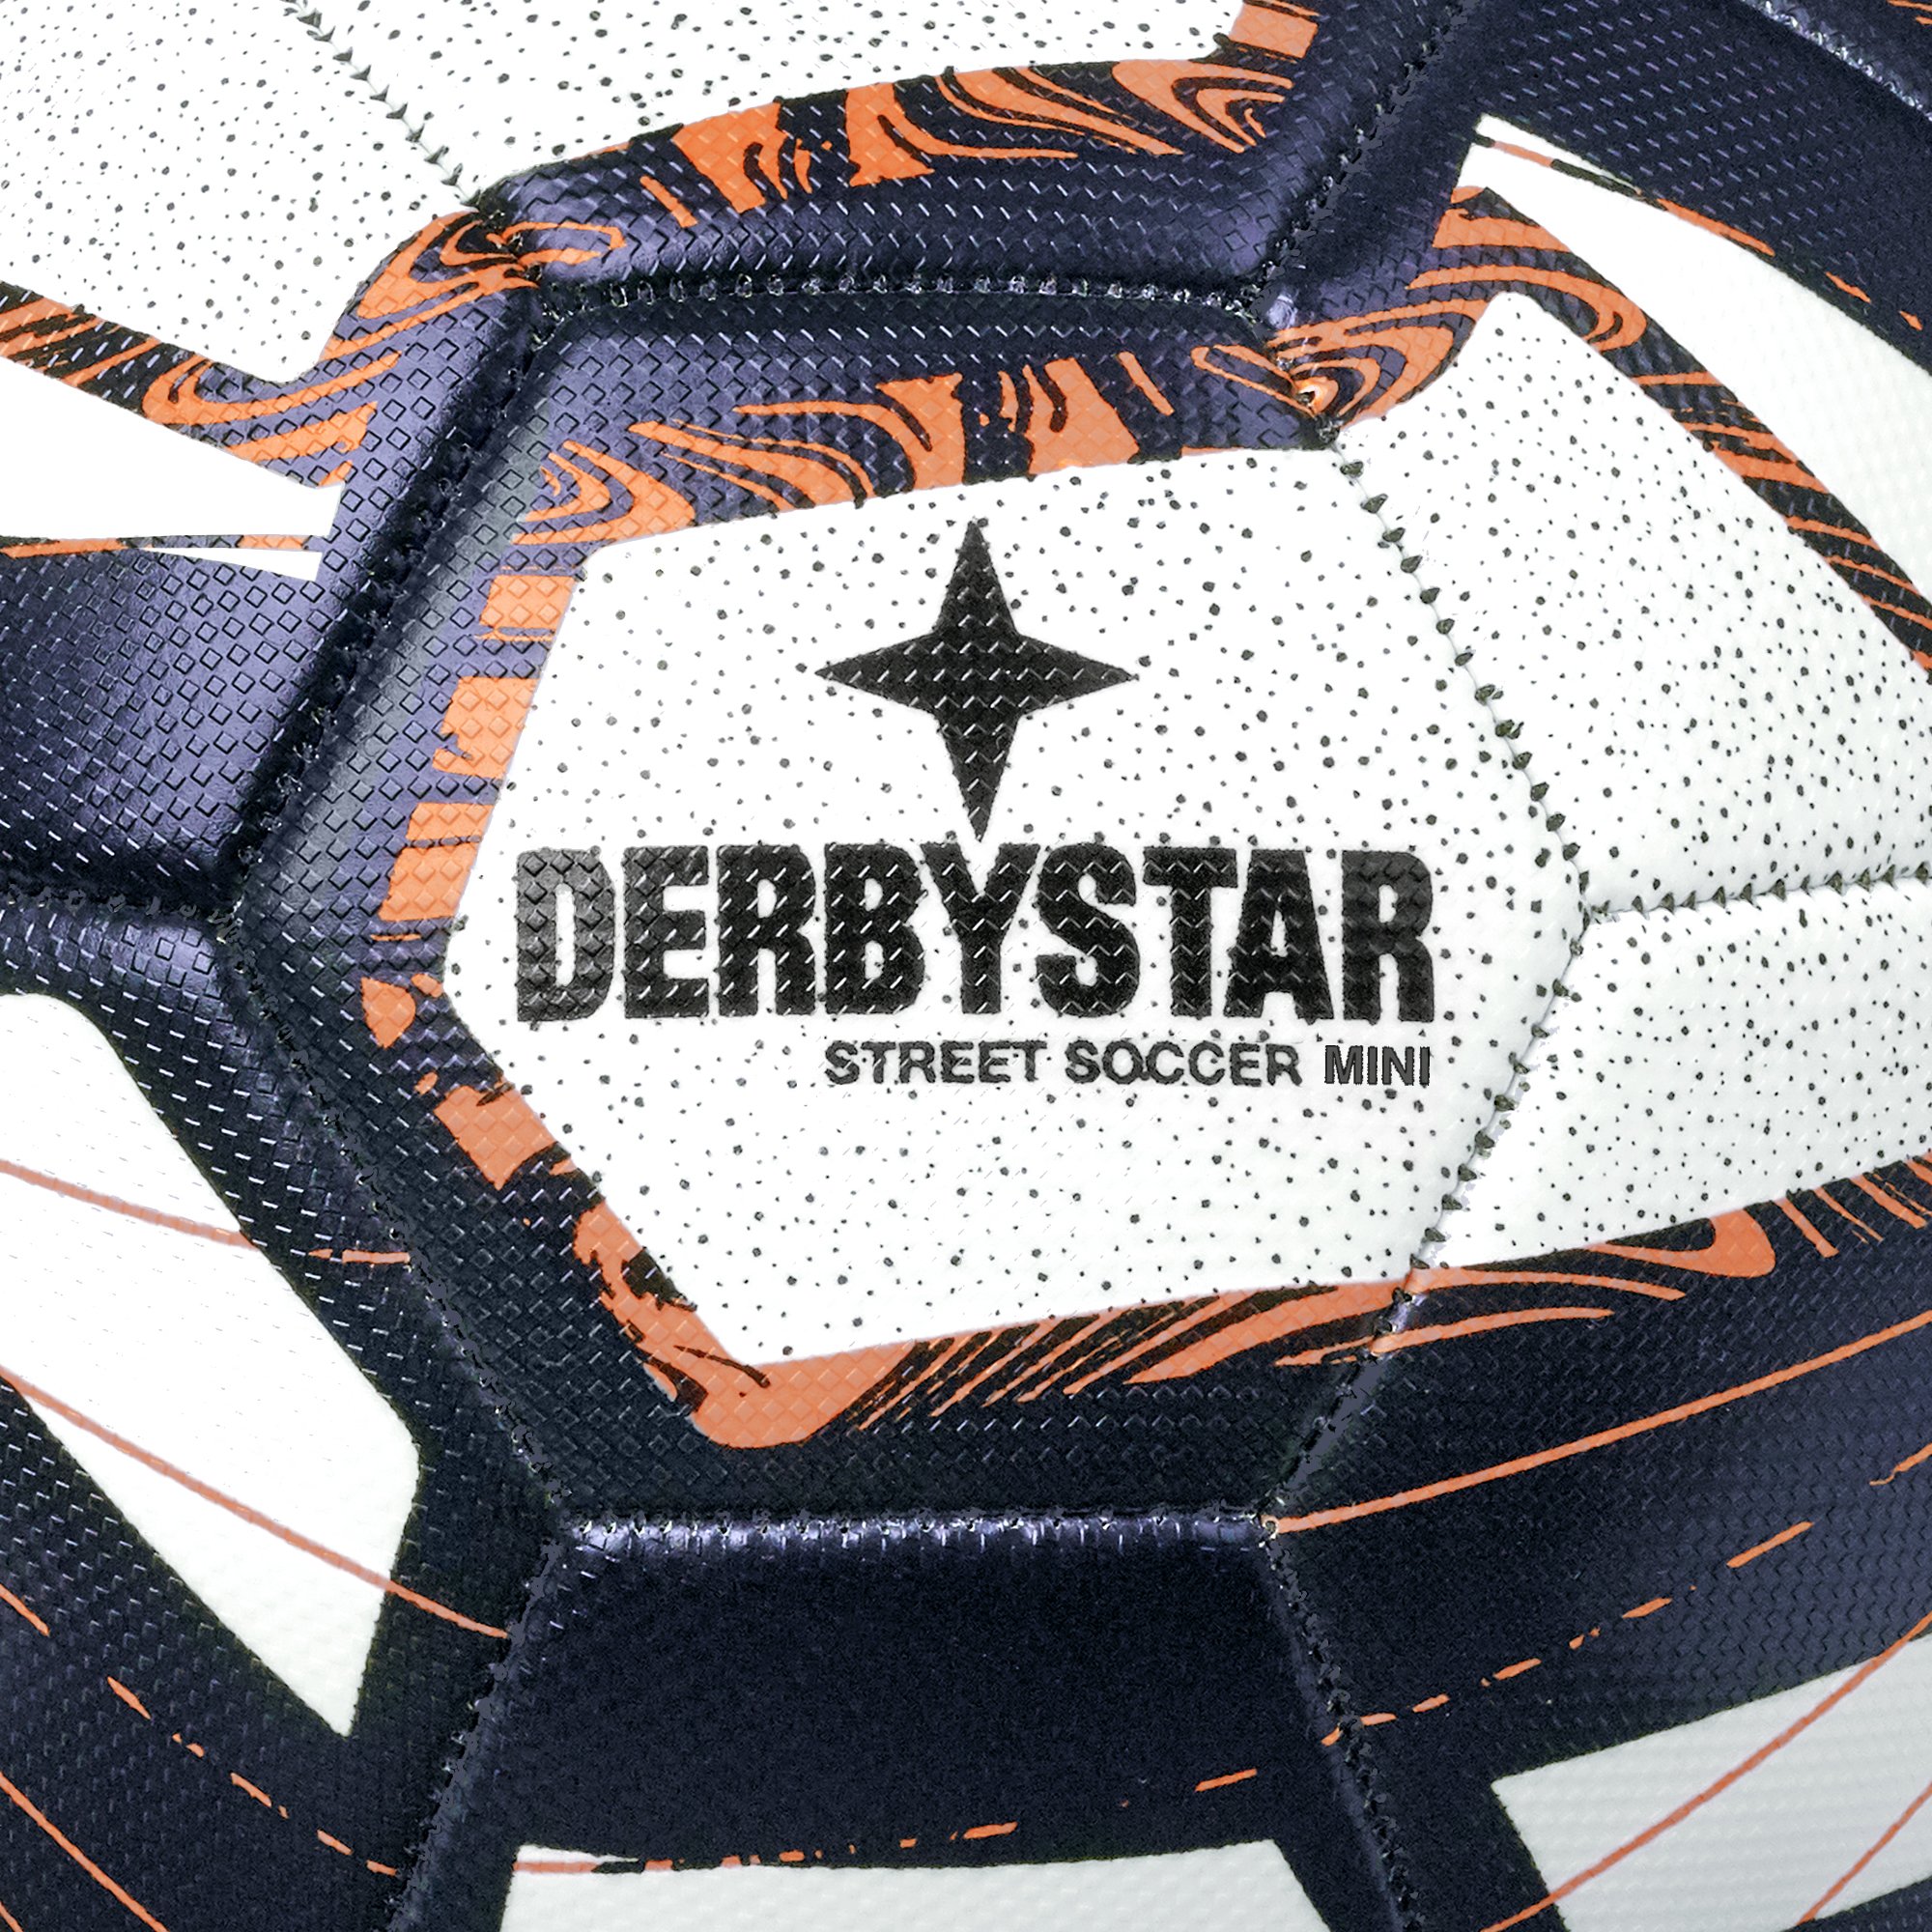 Derbystar Miniball Street Soccer